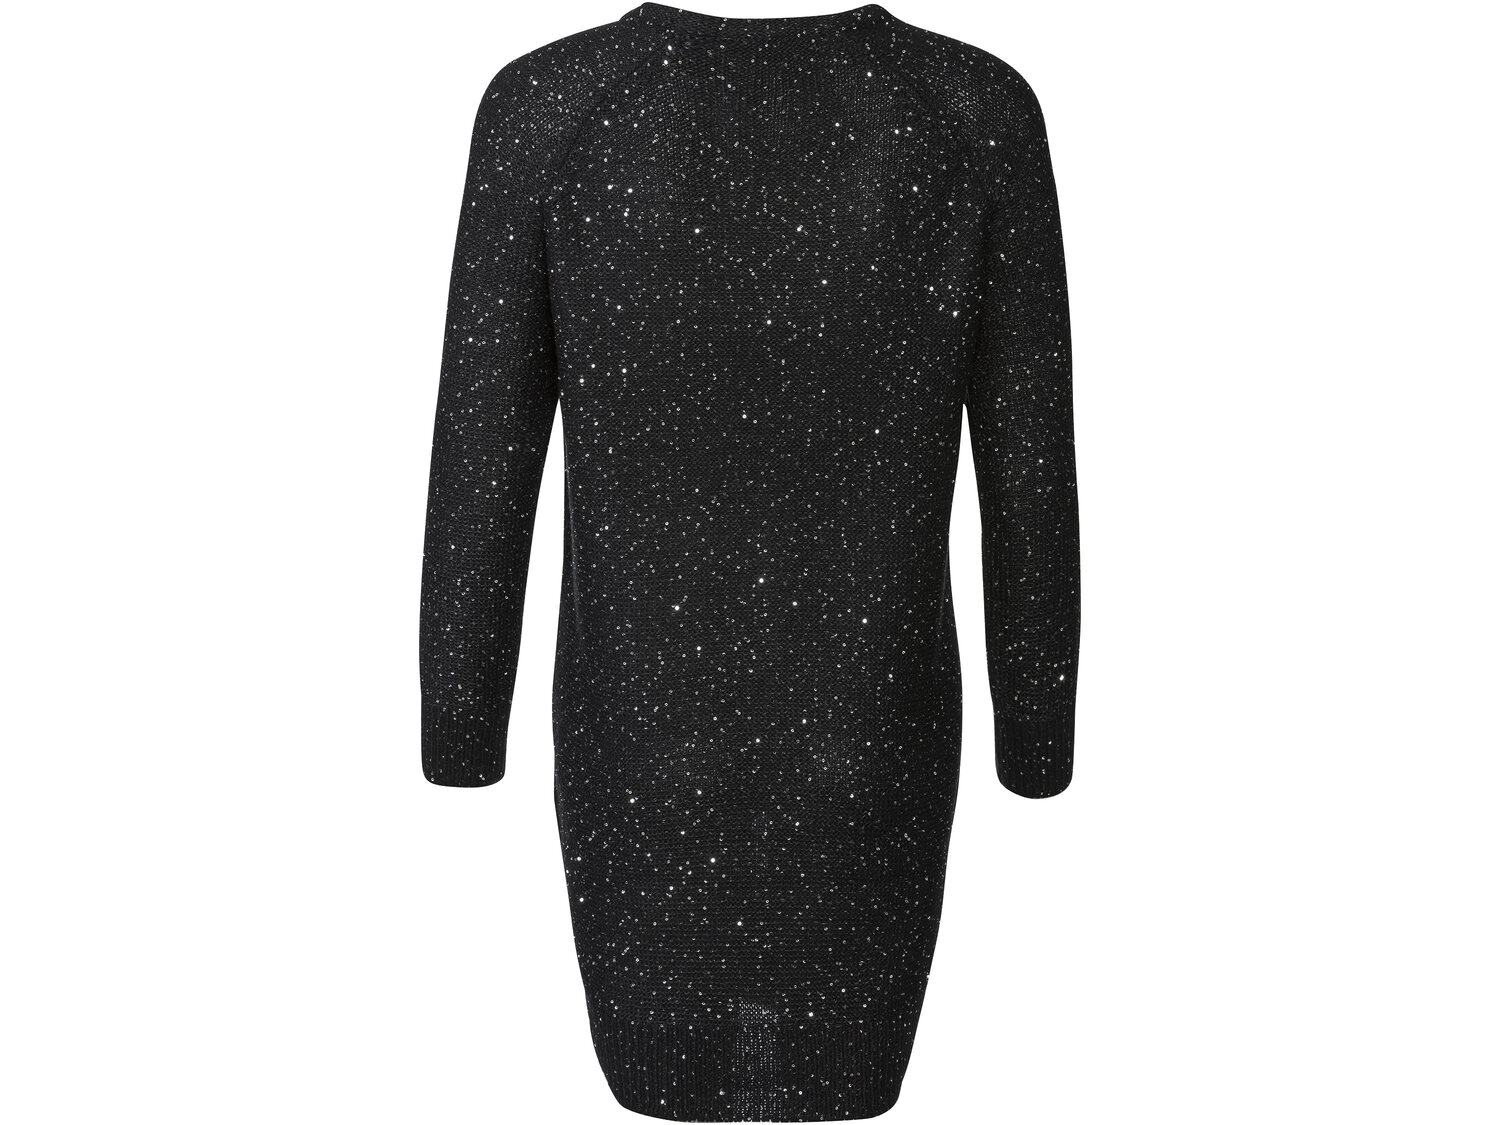 Sukienka dzianinowa Esmara, cena 39,99 PLN 
- rozmiary: XS-L
&nbsp;
Dostępne ...